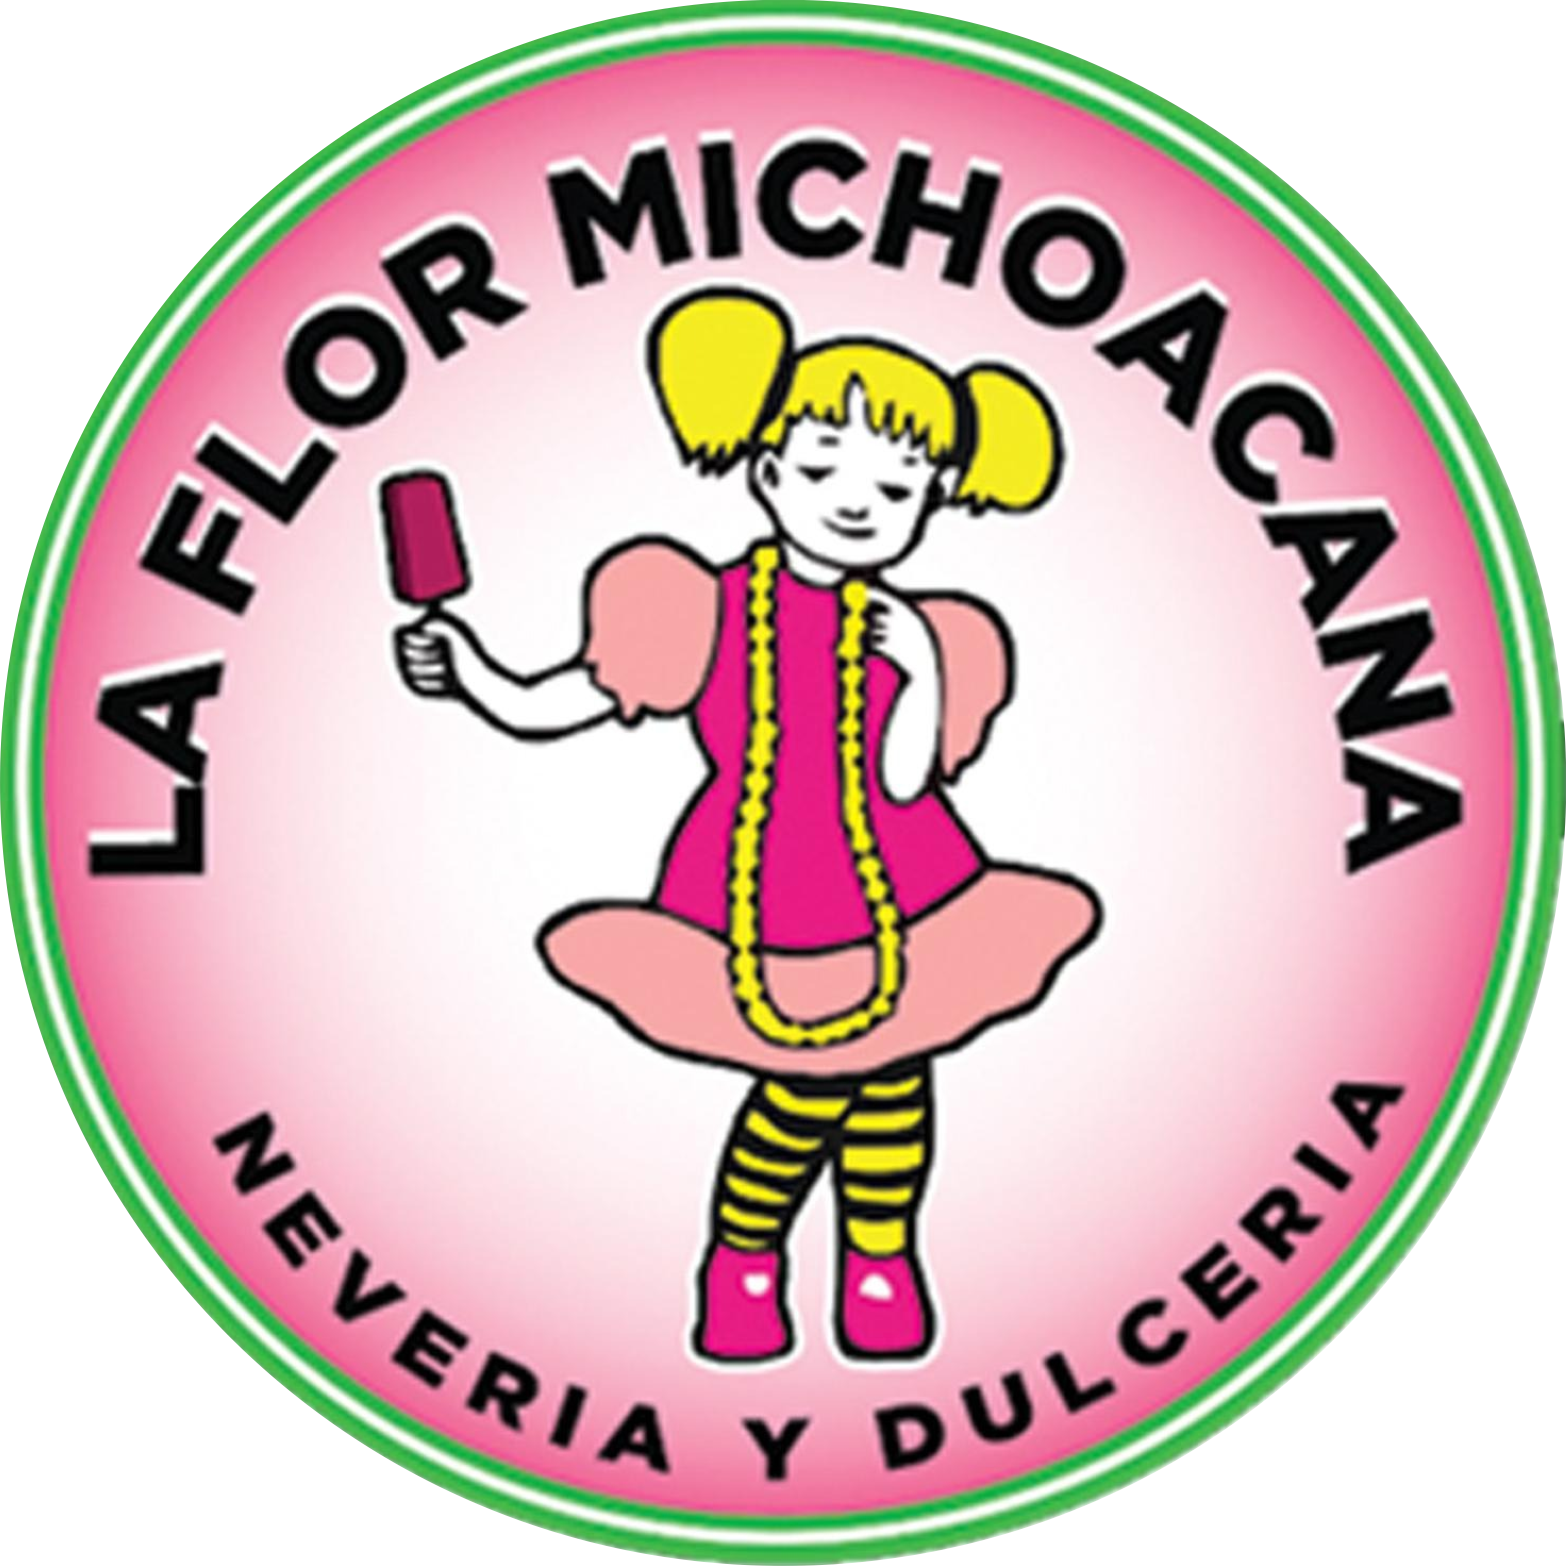 La Flor Michoacana